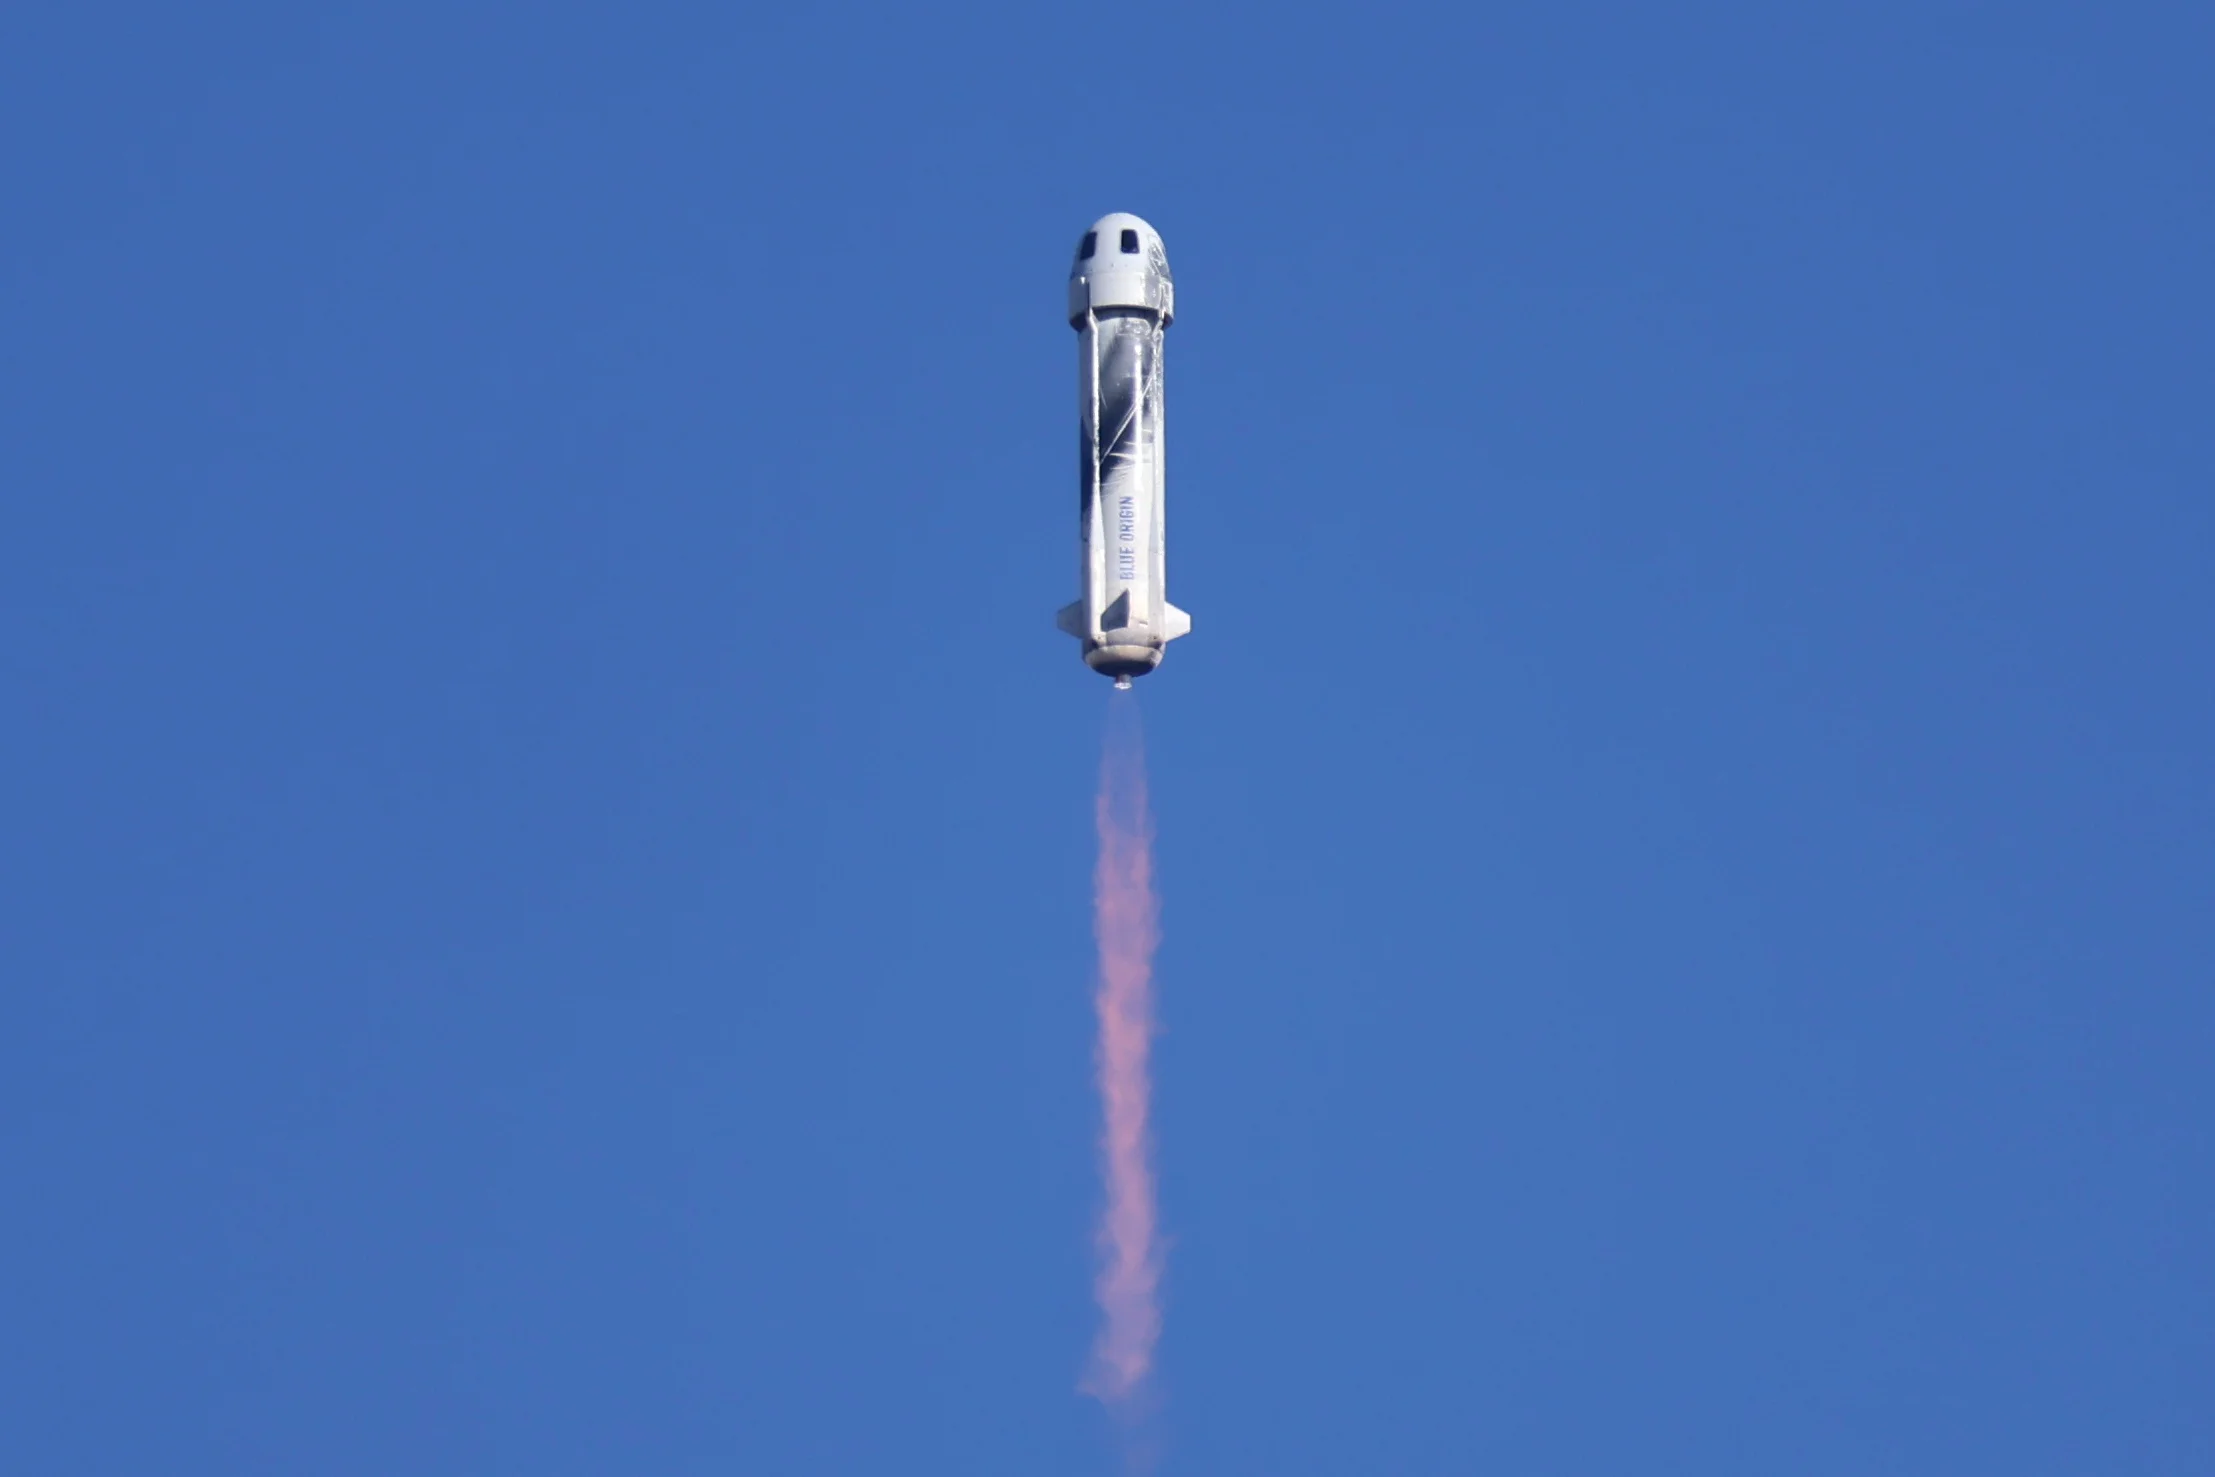 Blue Origin New Shepard Rocket Blasts Off Carrying Star Trek Actor William Shatner On Suborbital Flight